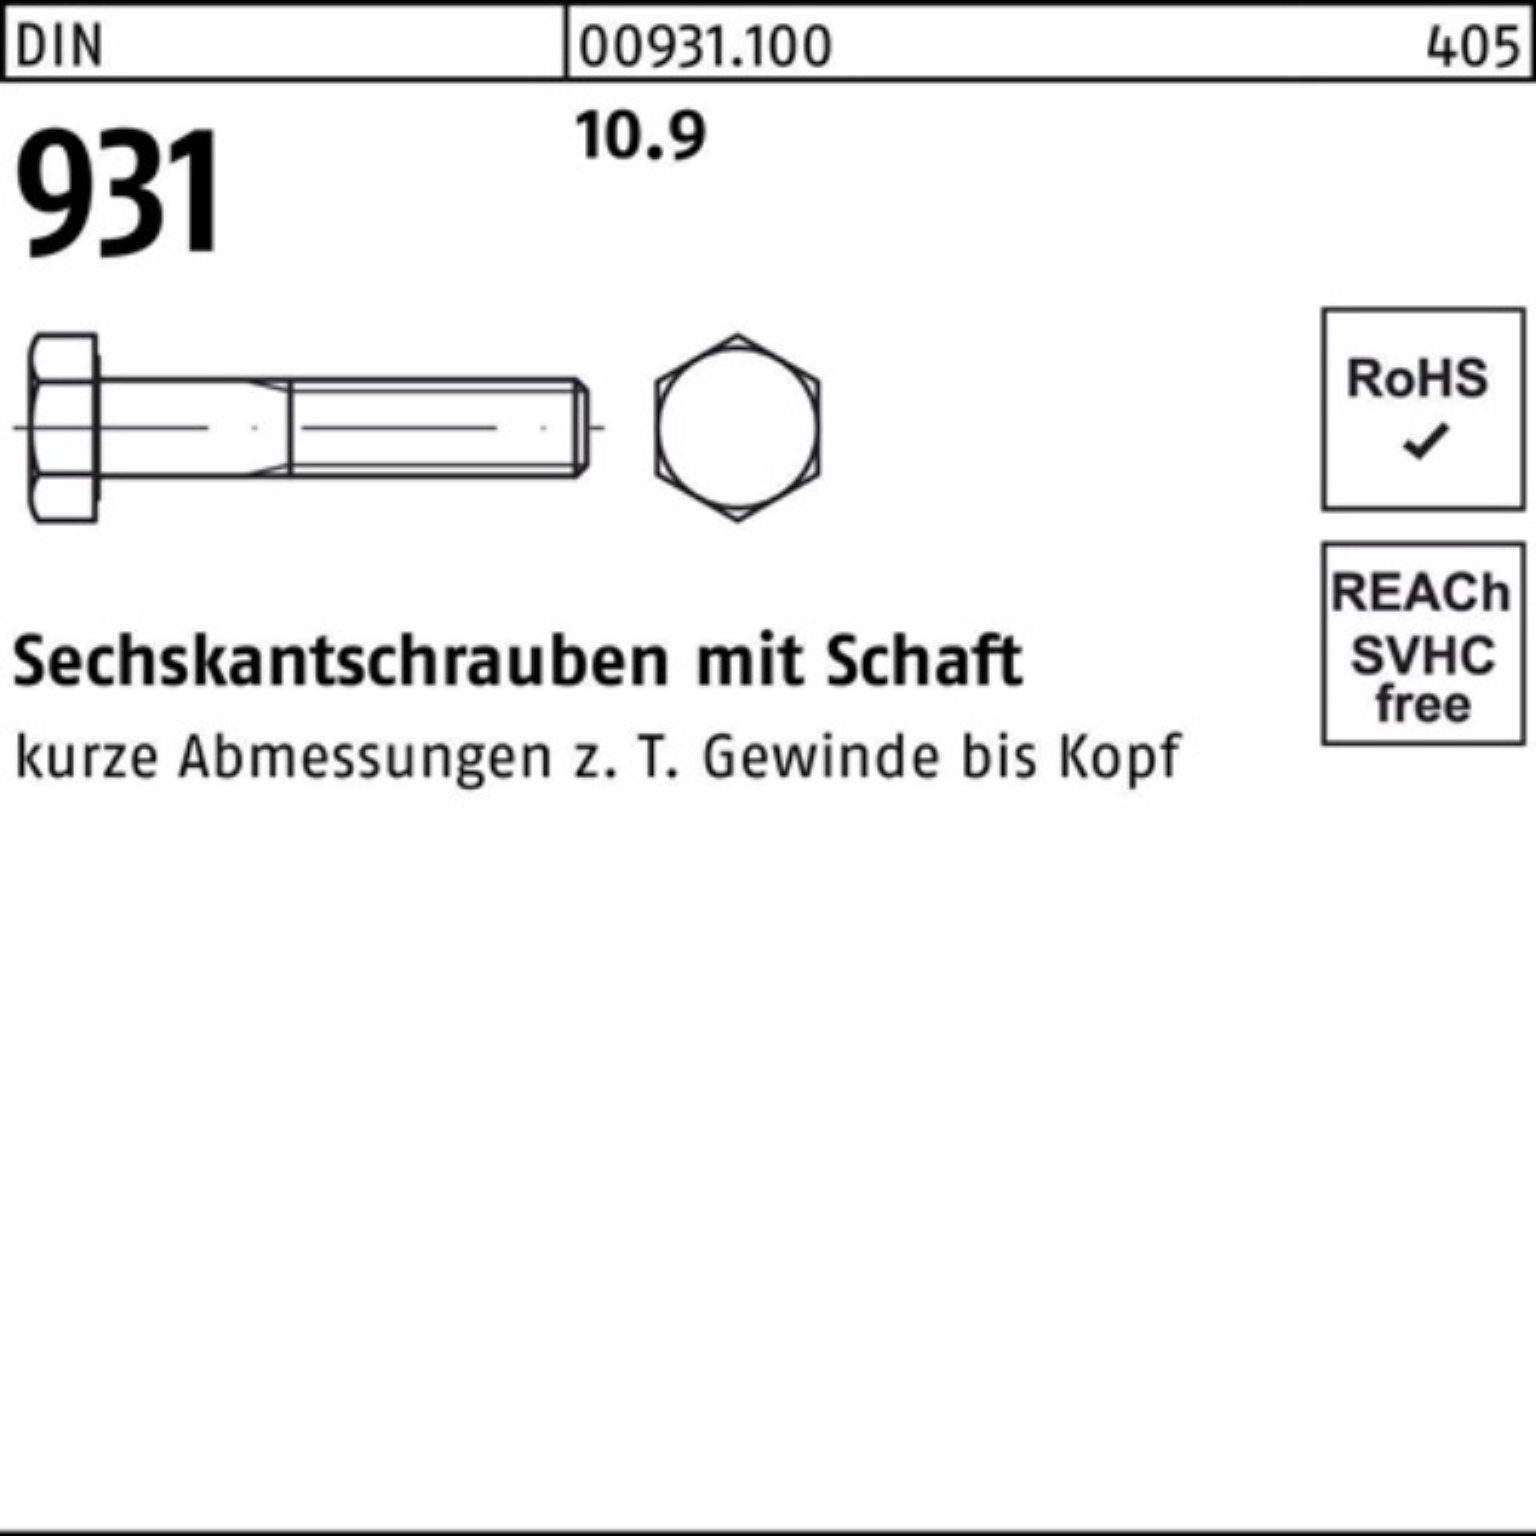 Reyher Sechskantschraube 100er Pack 931 330 DIN Stück 1 Sechskantschraube DIN 10.9 Schaft M20x